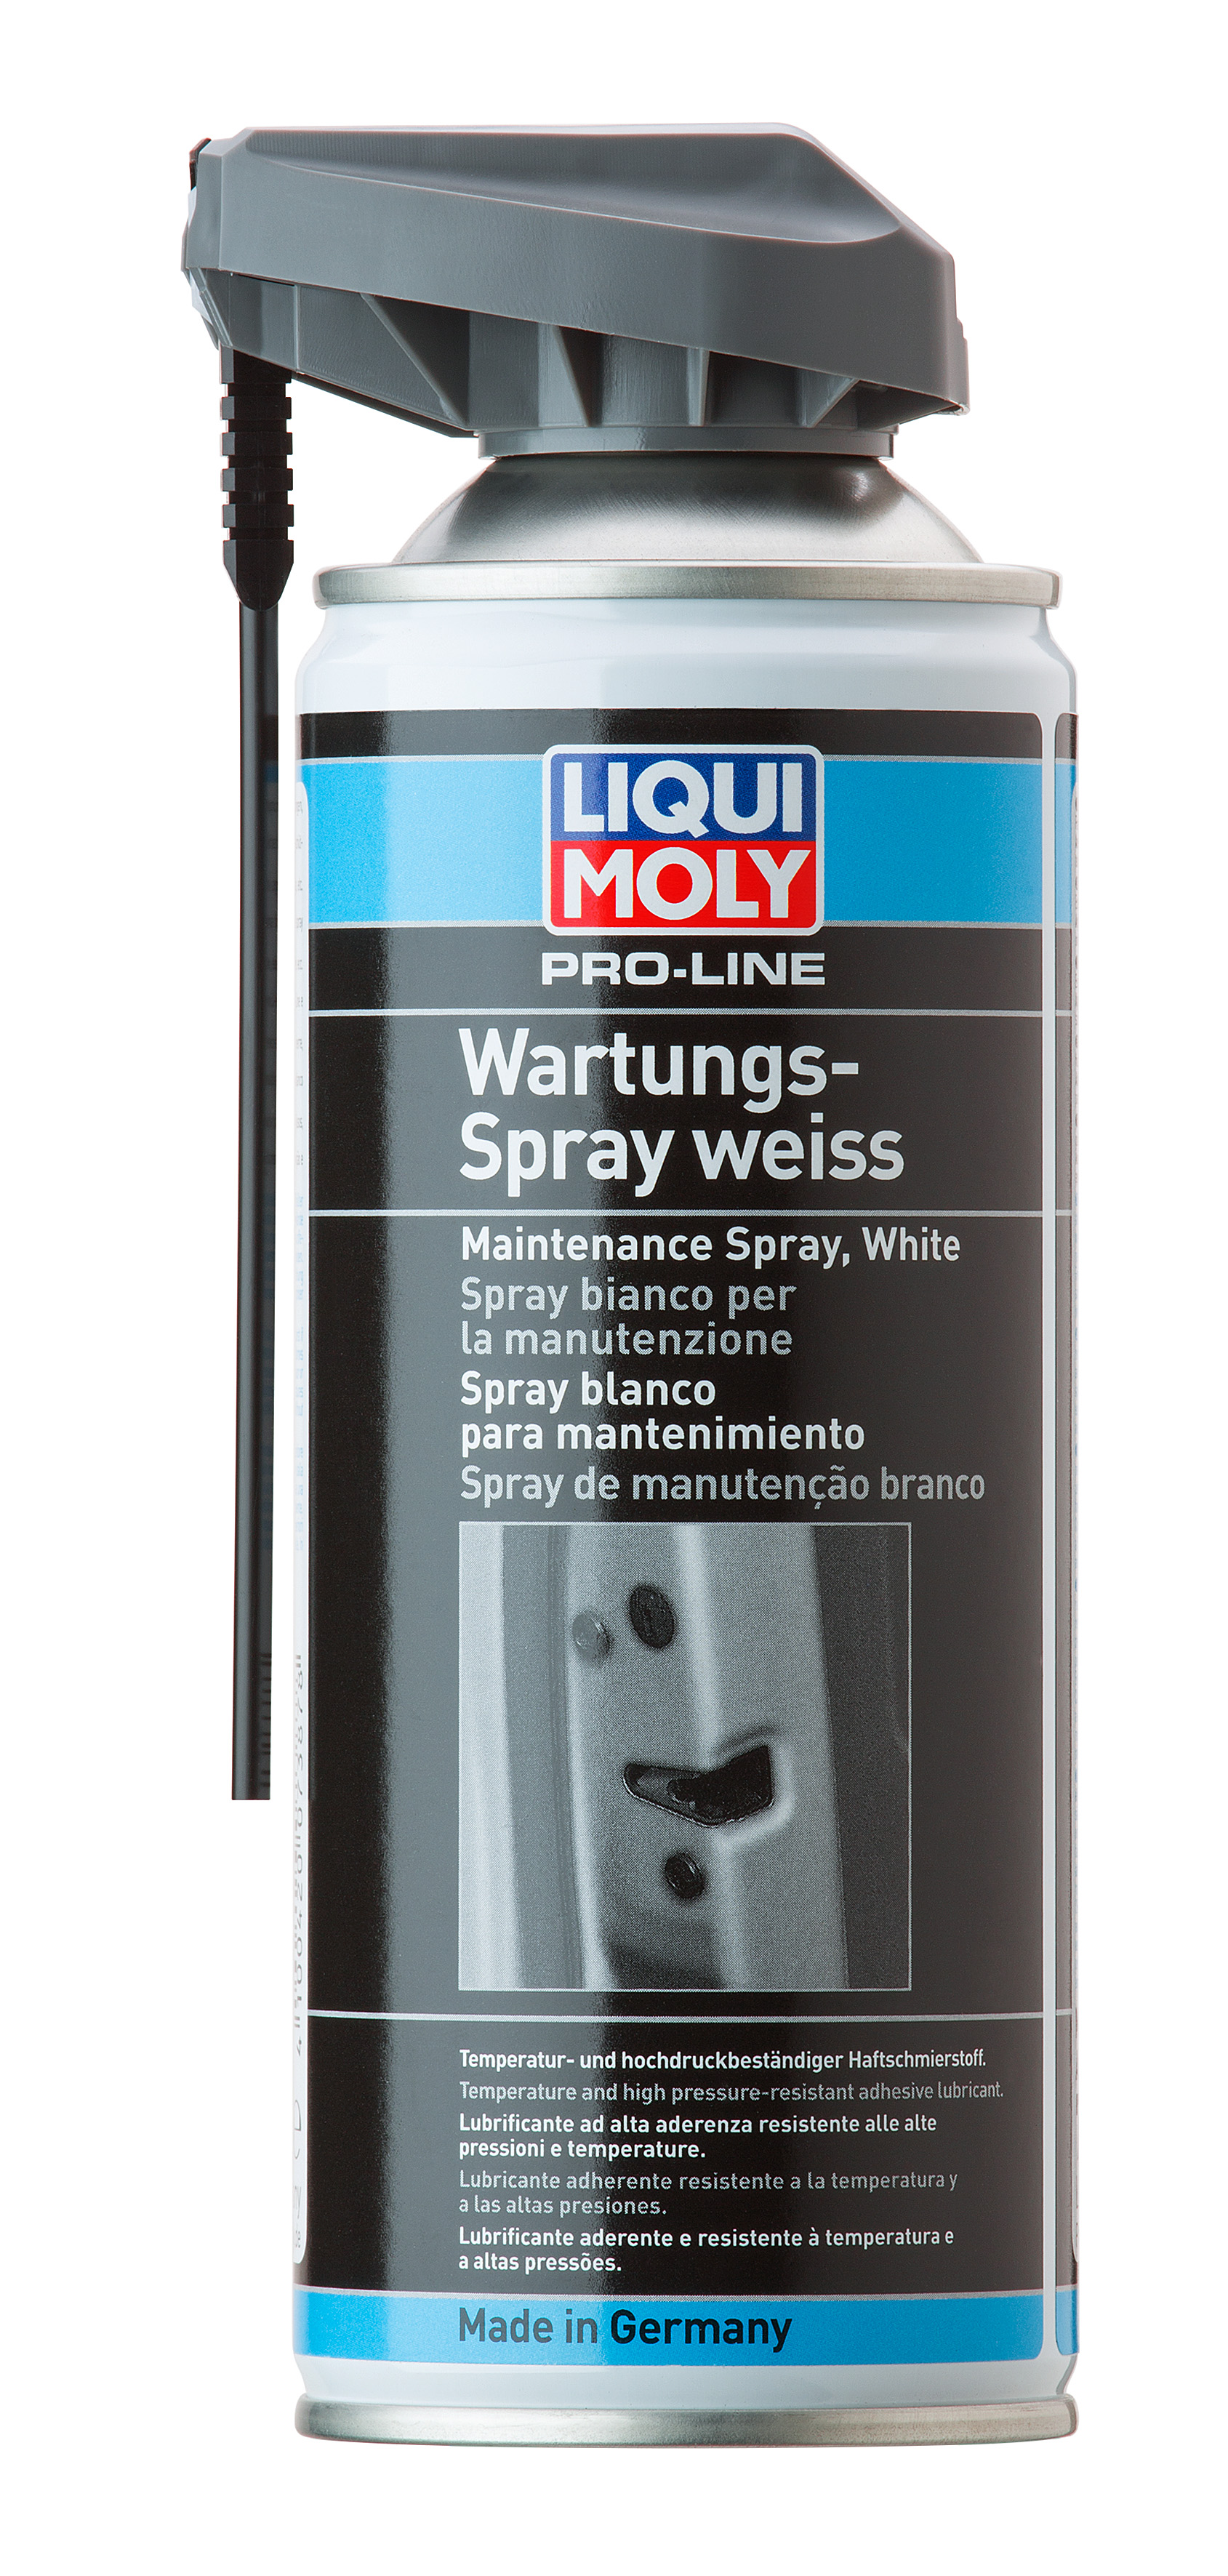 LIQUI MOLY 7387 Pro-Line Wartungs-Spray weiß Wasserbeständig Haftfest 400ml